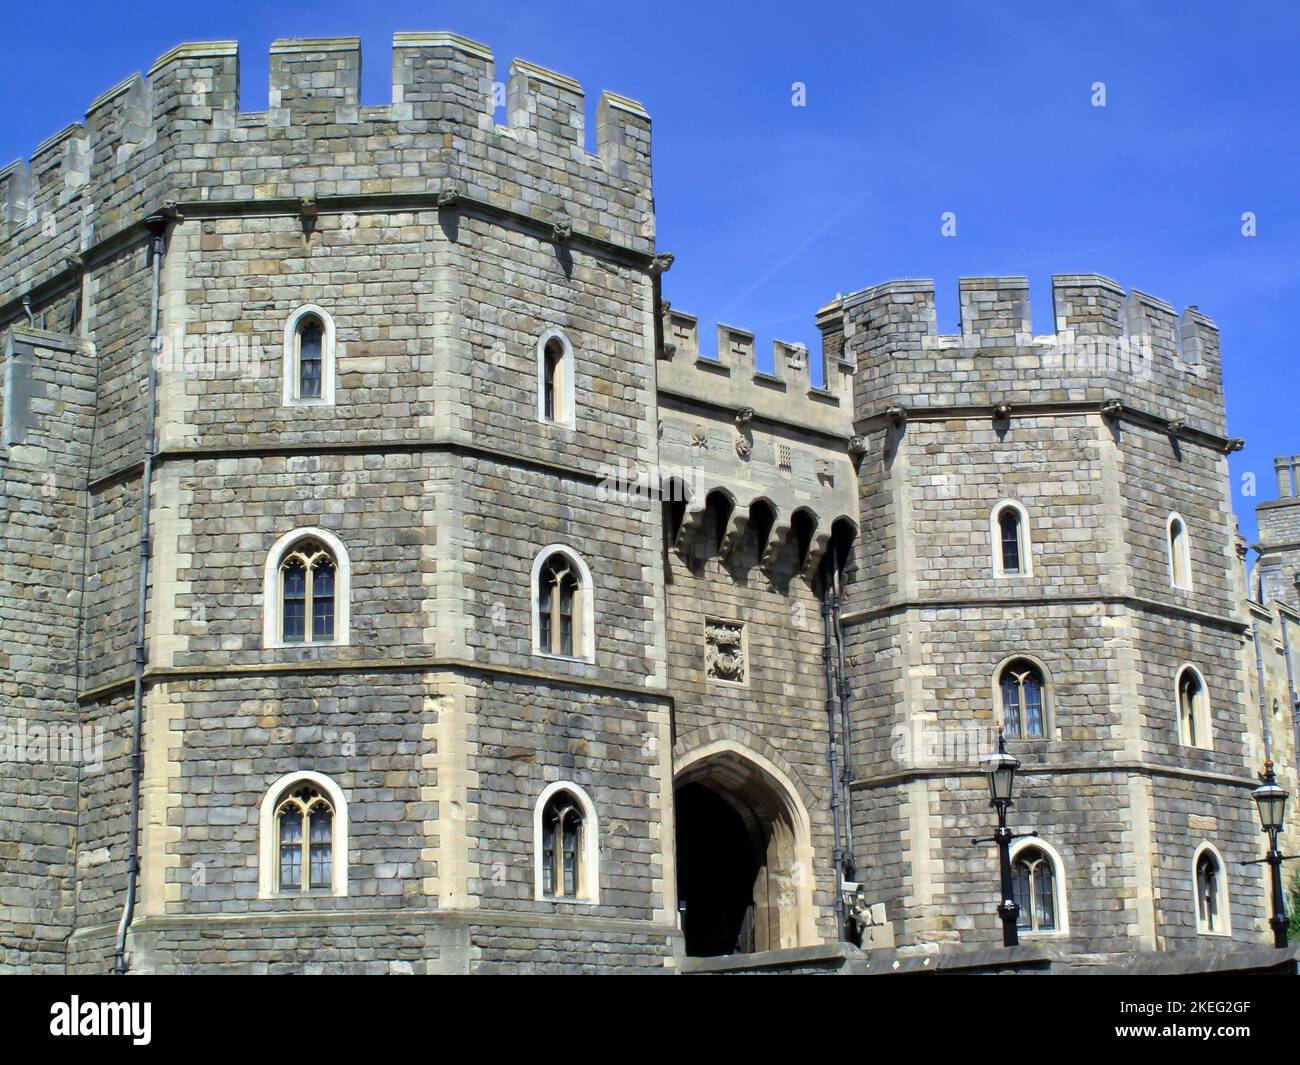 Henry VIII Gateway of Windsor Castle, England, UK, ursprünglich von William dem Eroberer kurz nach seiner Invasion in England im Jahr 1066 gebaut, Stock Photo i Stockfoto